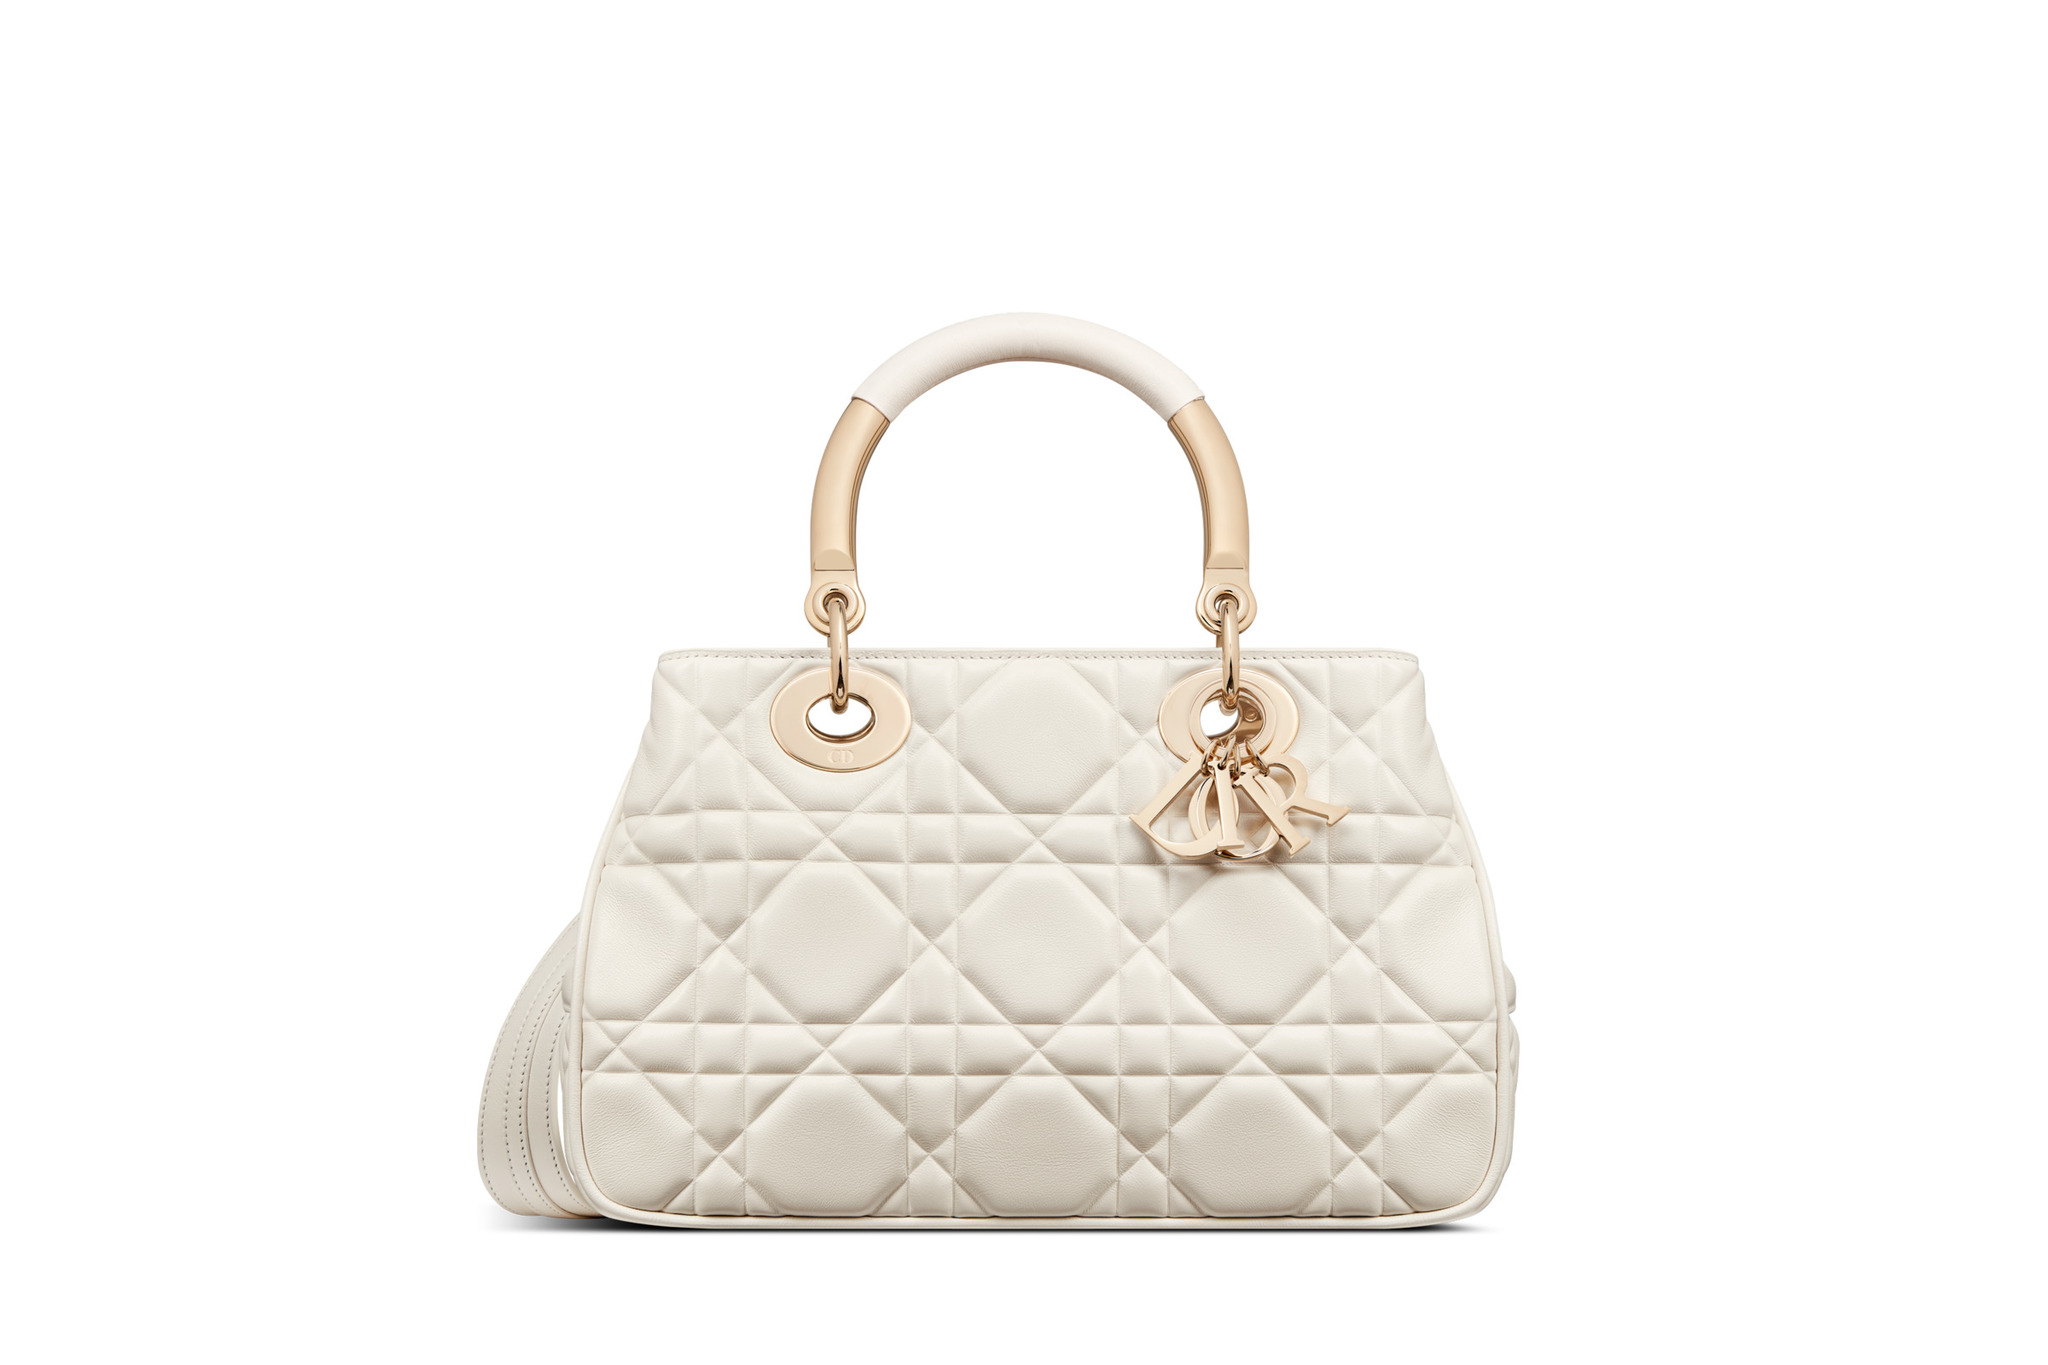 El nuevo bolso de Dior, Dior Lady 95.22 en piel blanca.